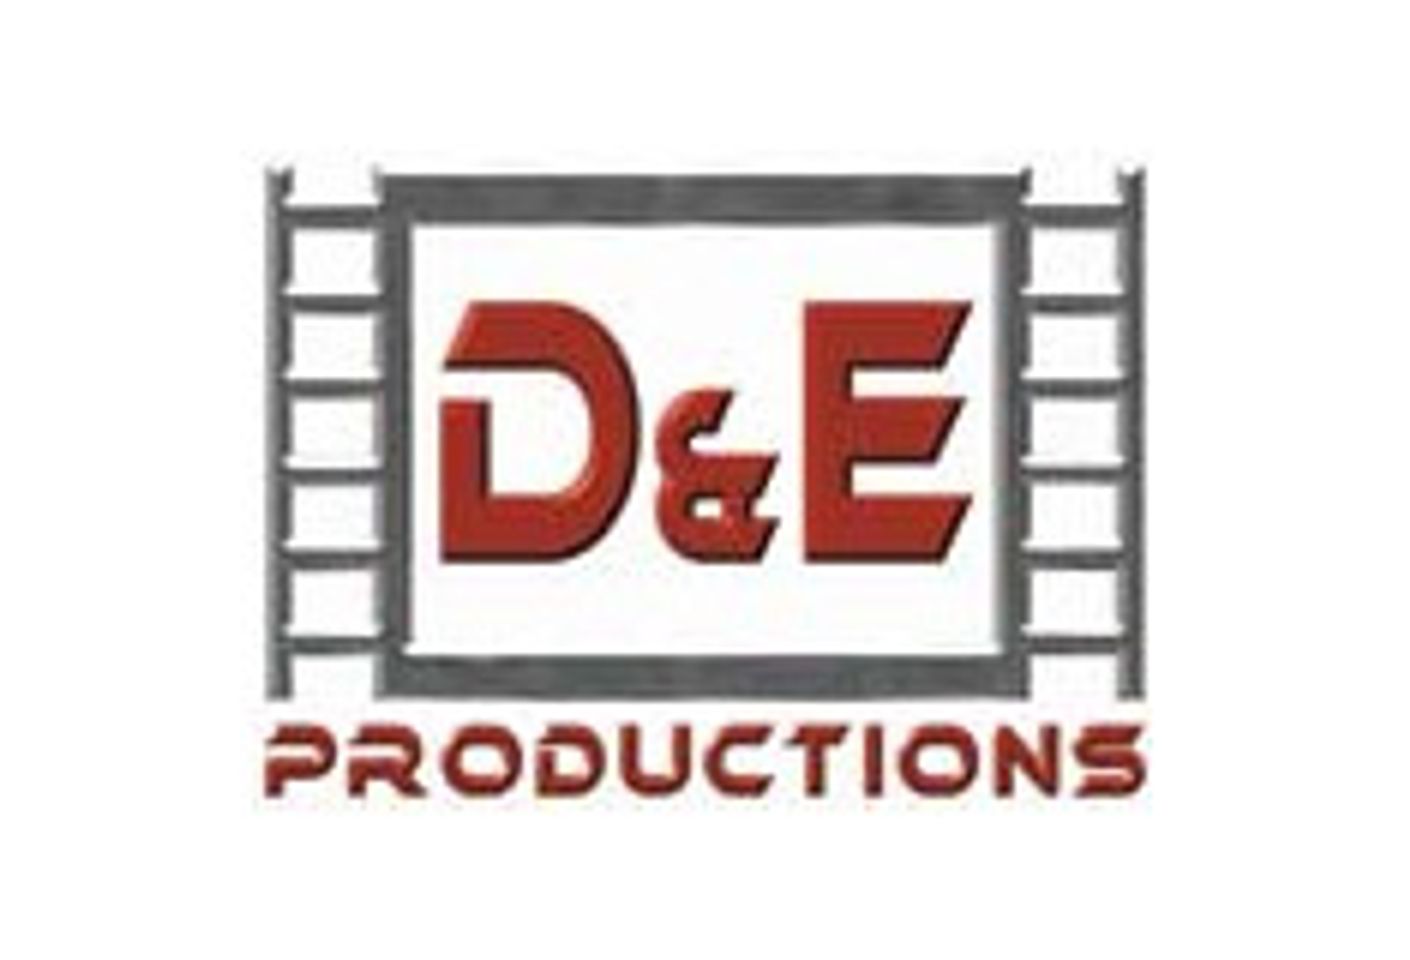 Company Profile: D&E Productions